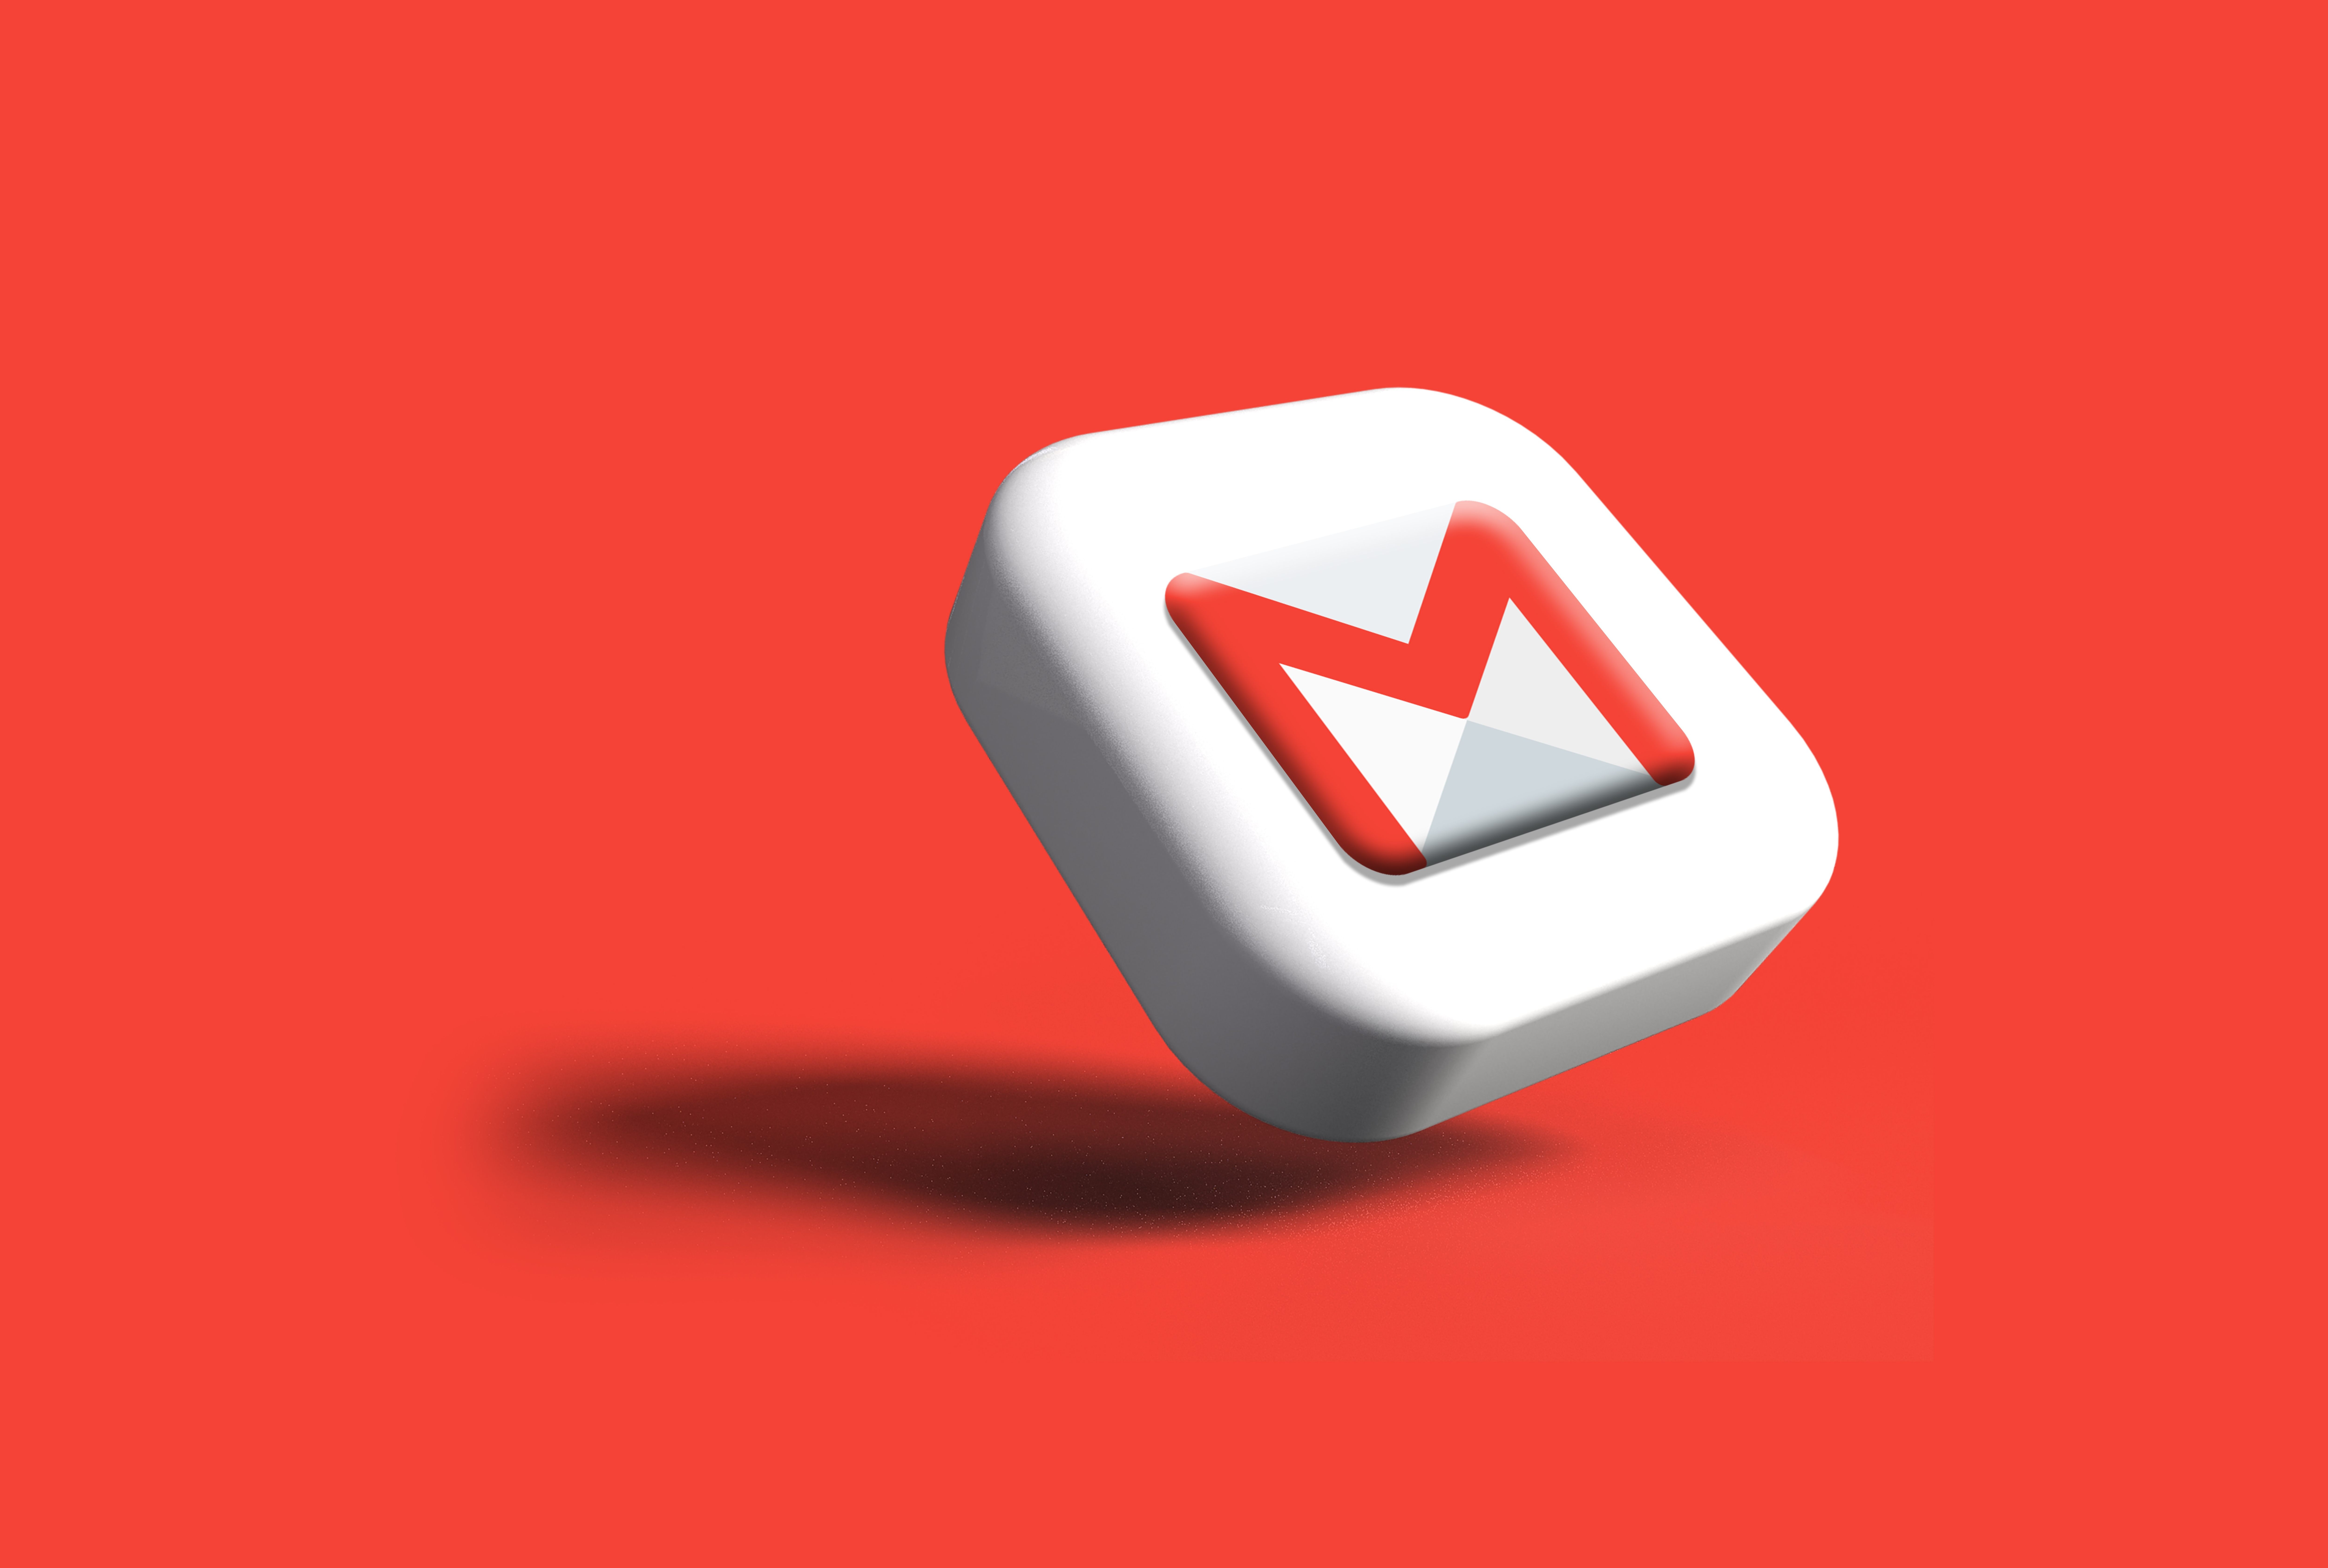 uso de gmail para enviar archivos de gran tamaño por correo electrónico